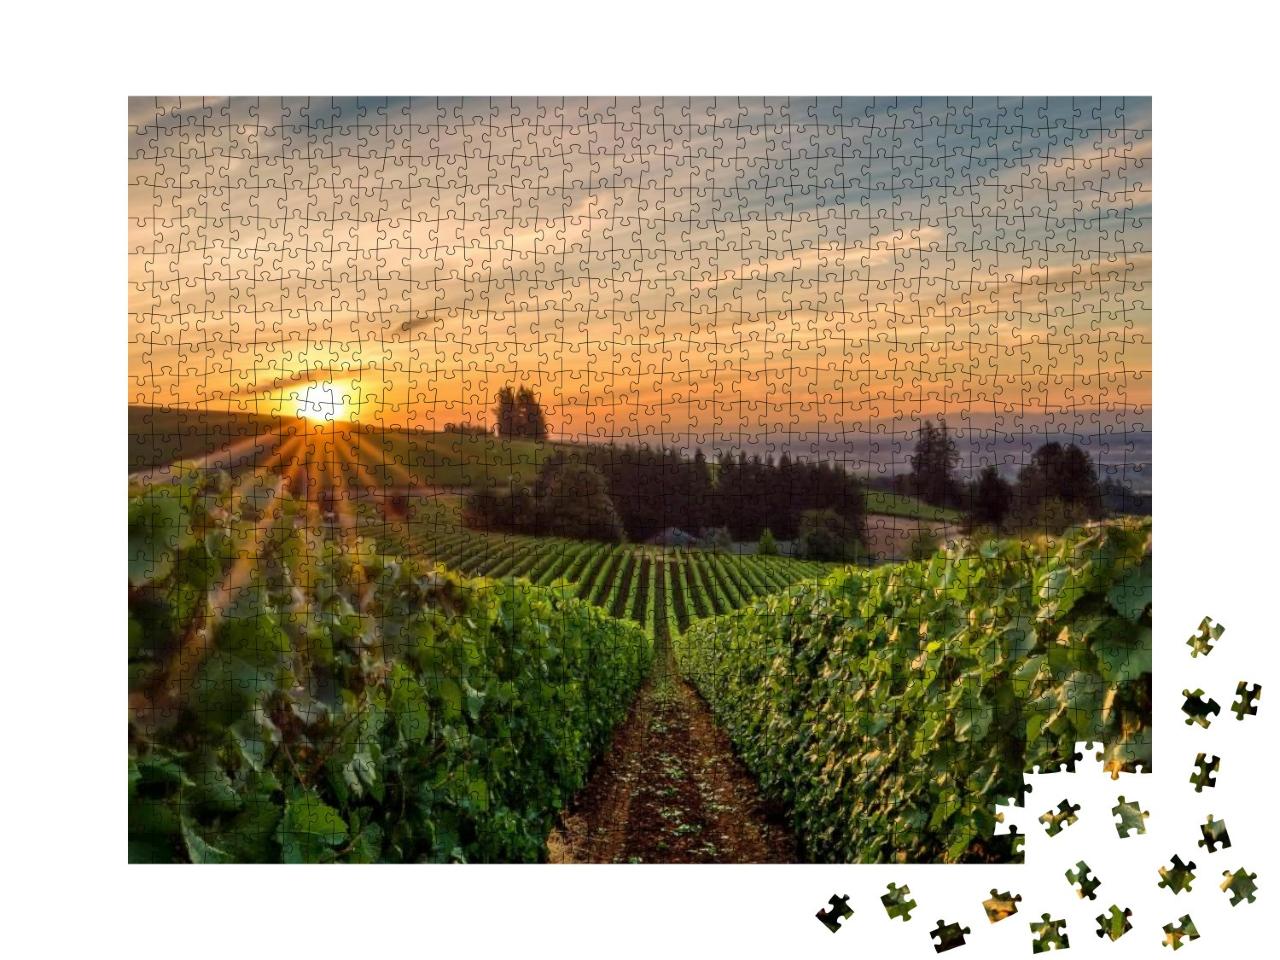 Puzzle 1000 Teile „Sonnenaufgang über einem Weinberg im Willamette Valley“